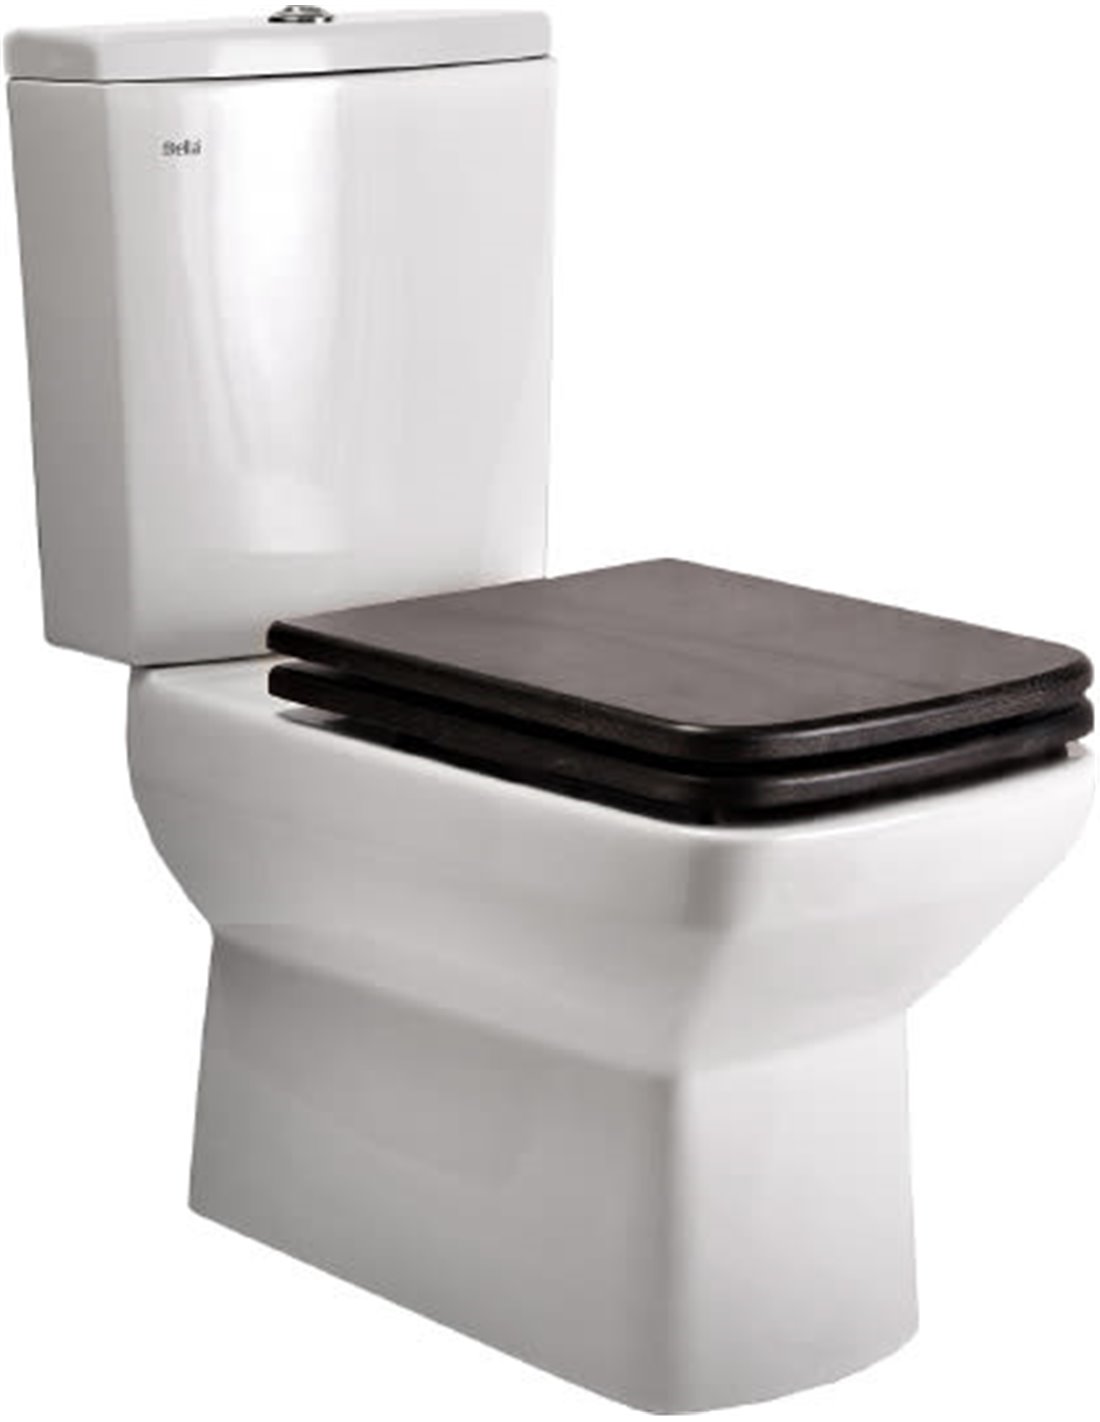 della toilet seat